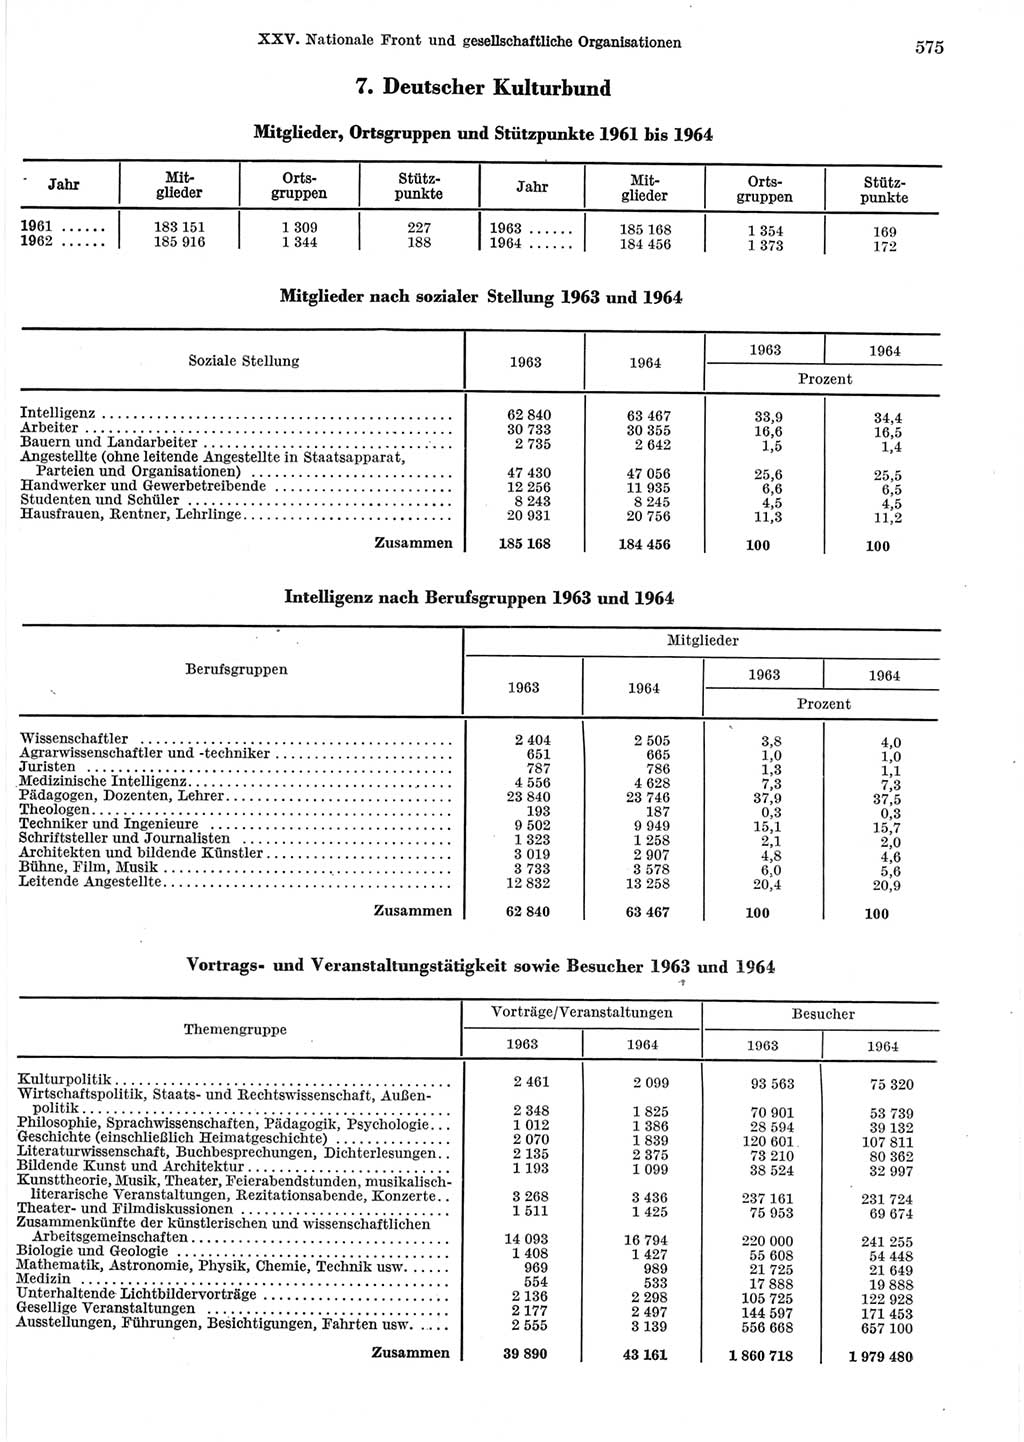 Statistisches Jahrbuch der Deutschen Demokratischen Republik (DDR) 1965, Seite 575 (Stat. Jb. DDR 1965, S. 575)